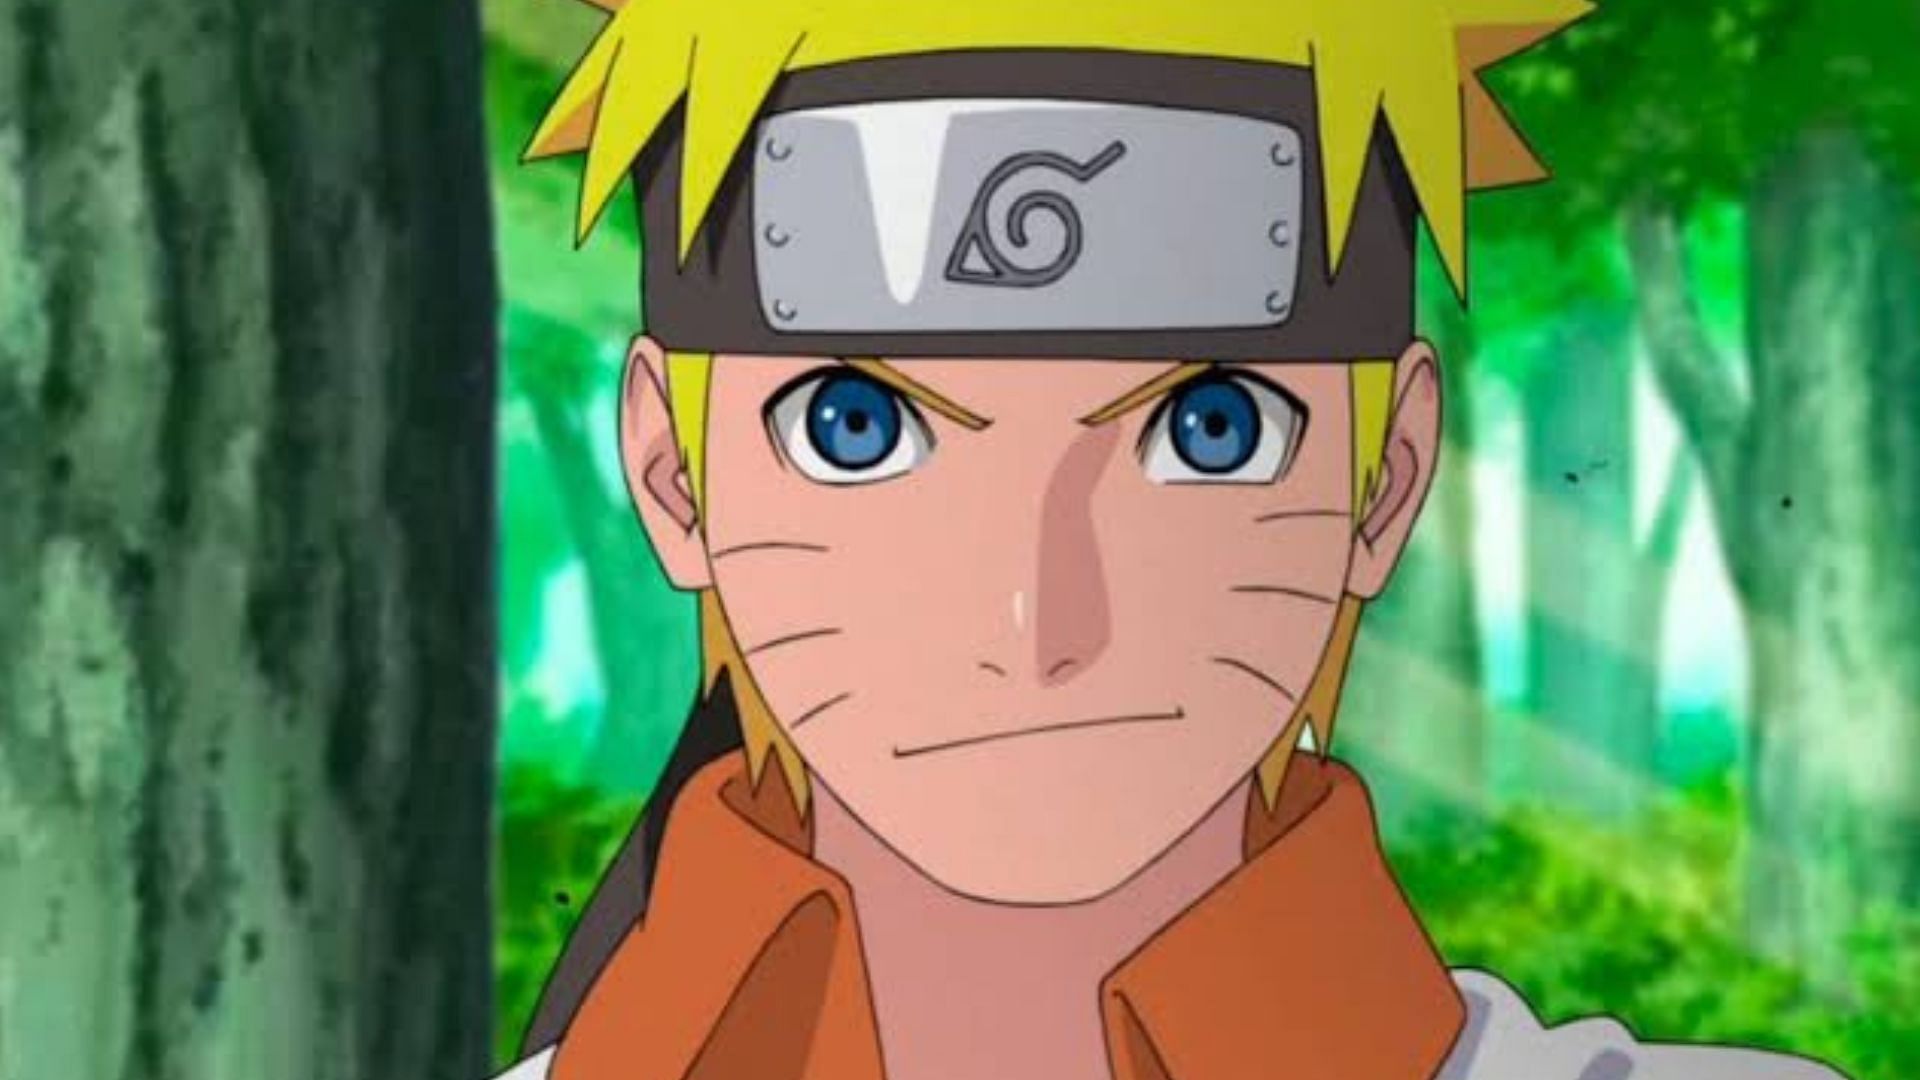 Naruto celebra 20 anos com quatro episódios inéditos - Game Arena